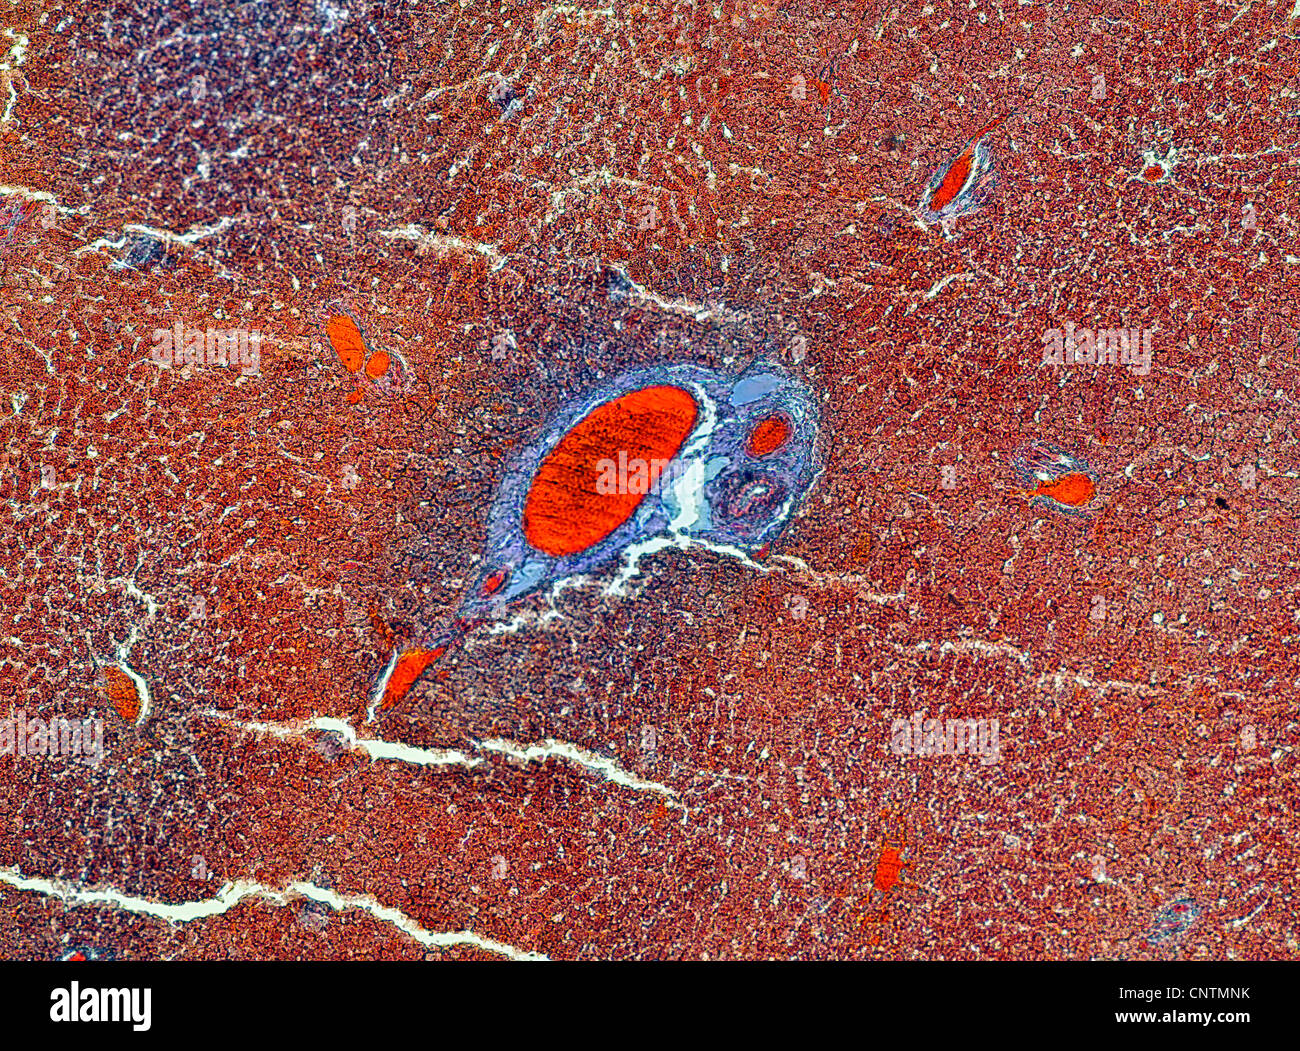 Persone, esseri umani, esseri umani (Homo sapiens sapiens), la sezione trasversale del fegato con storage di glicogeno Foto Stock